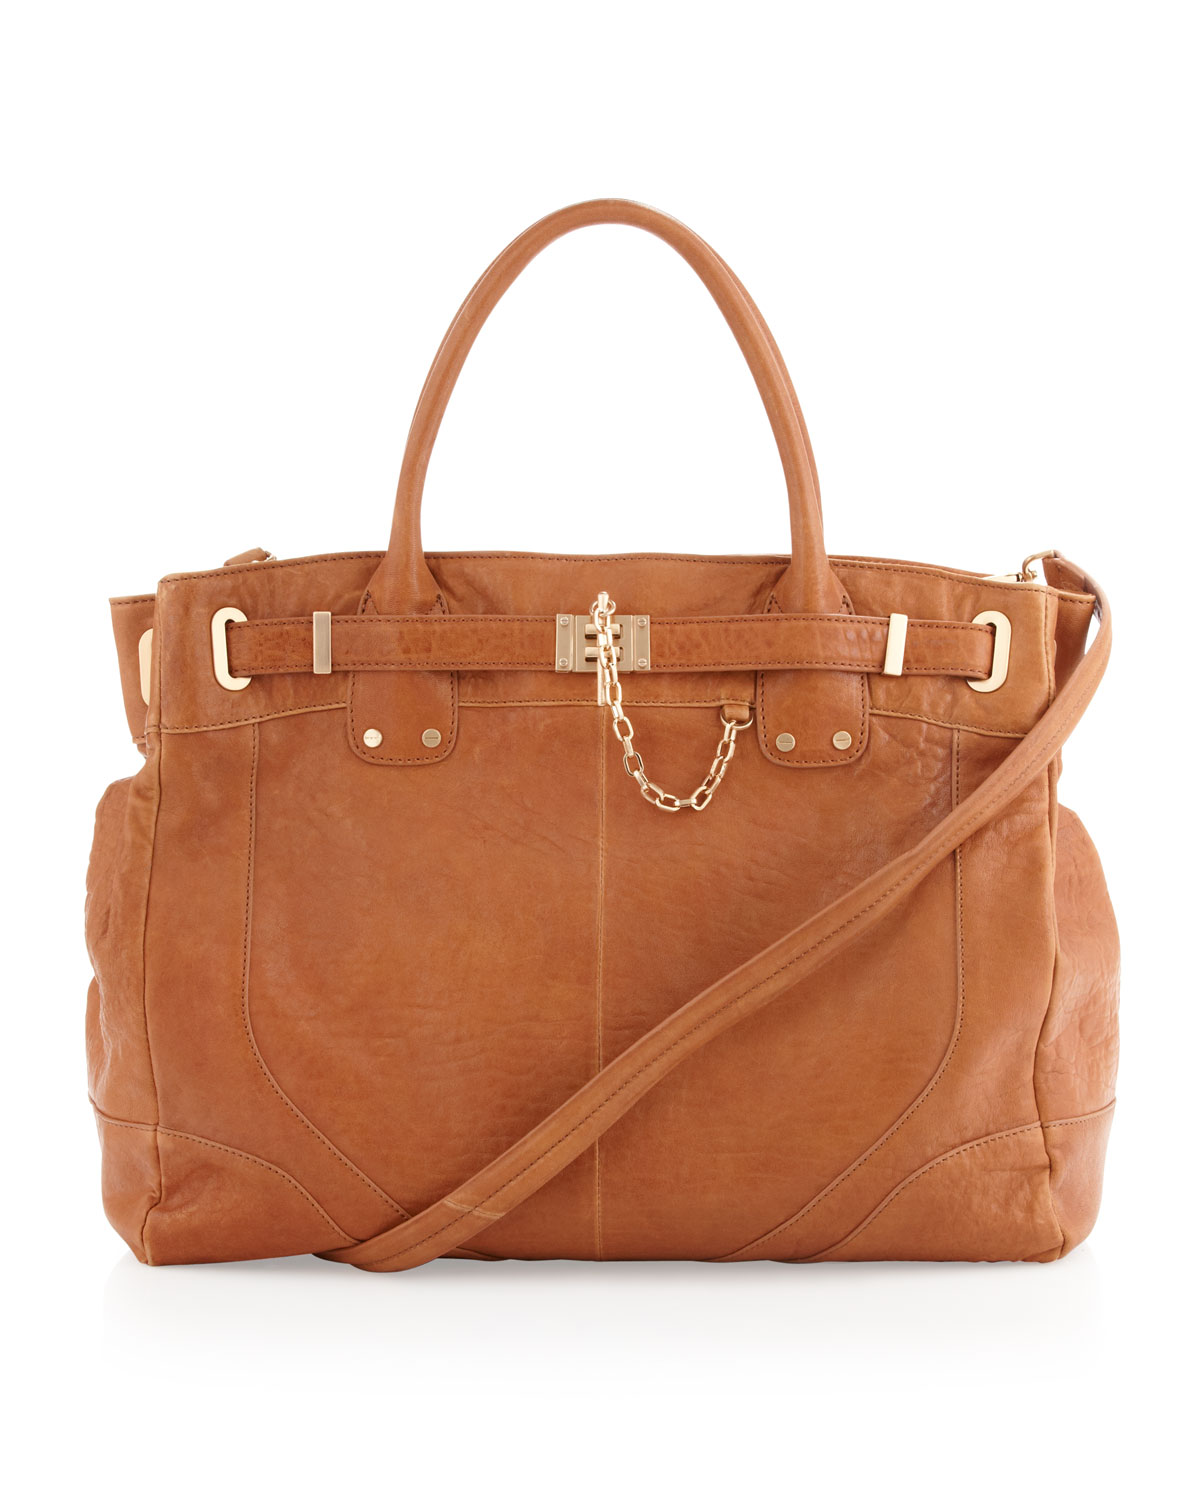 Rachel Zoe Zoe Leather Weekender Bag in Brown (camel) | Lyst